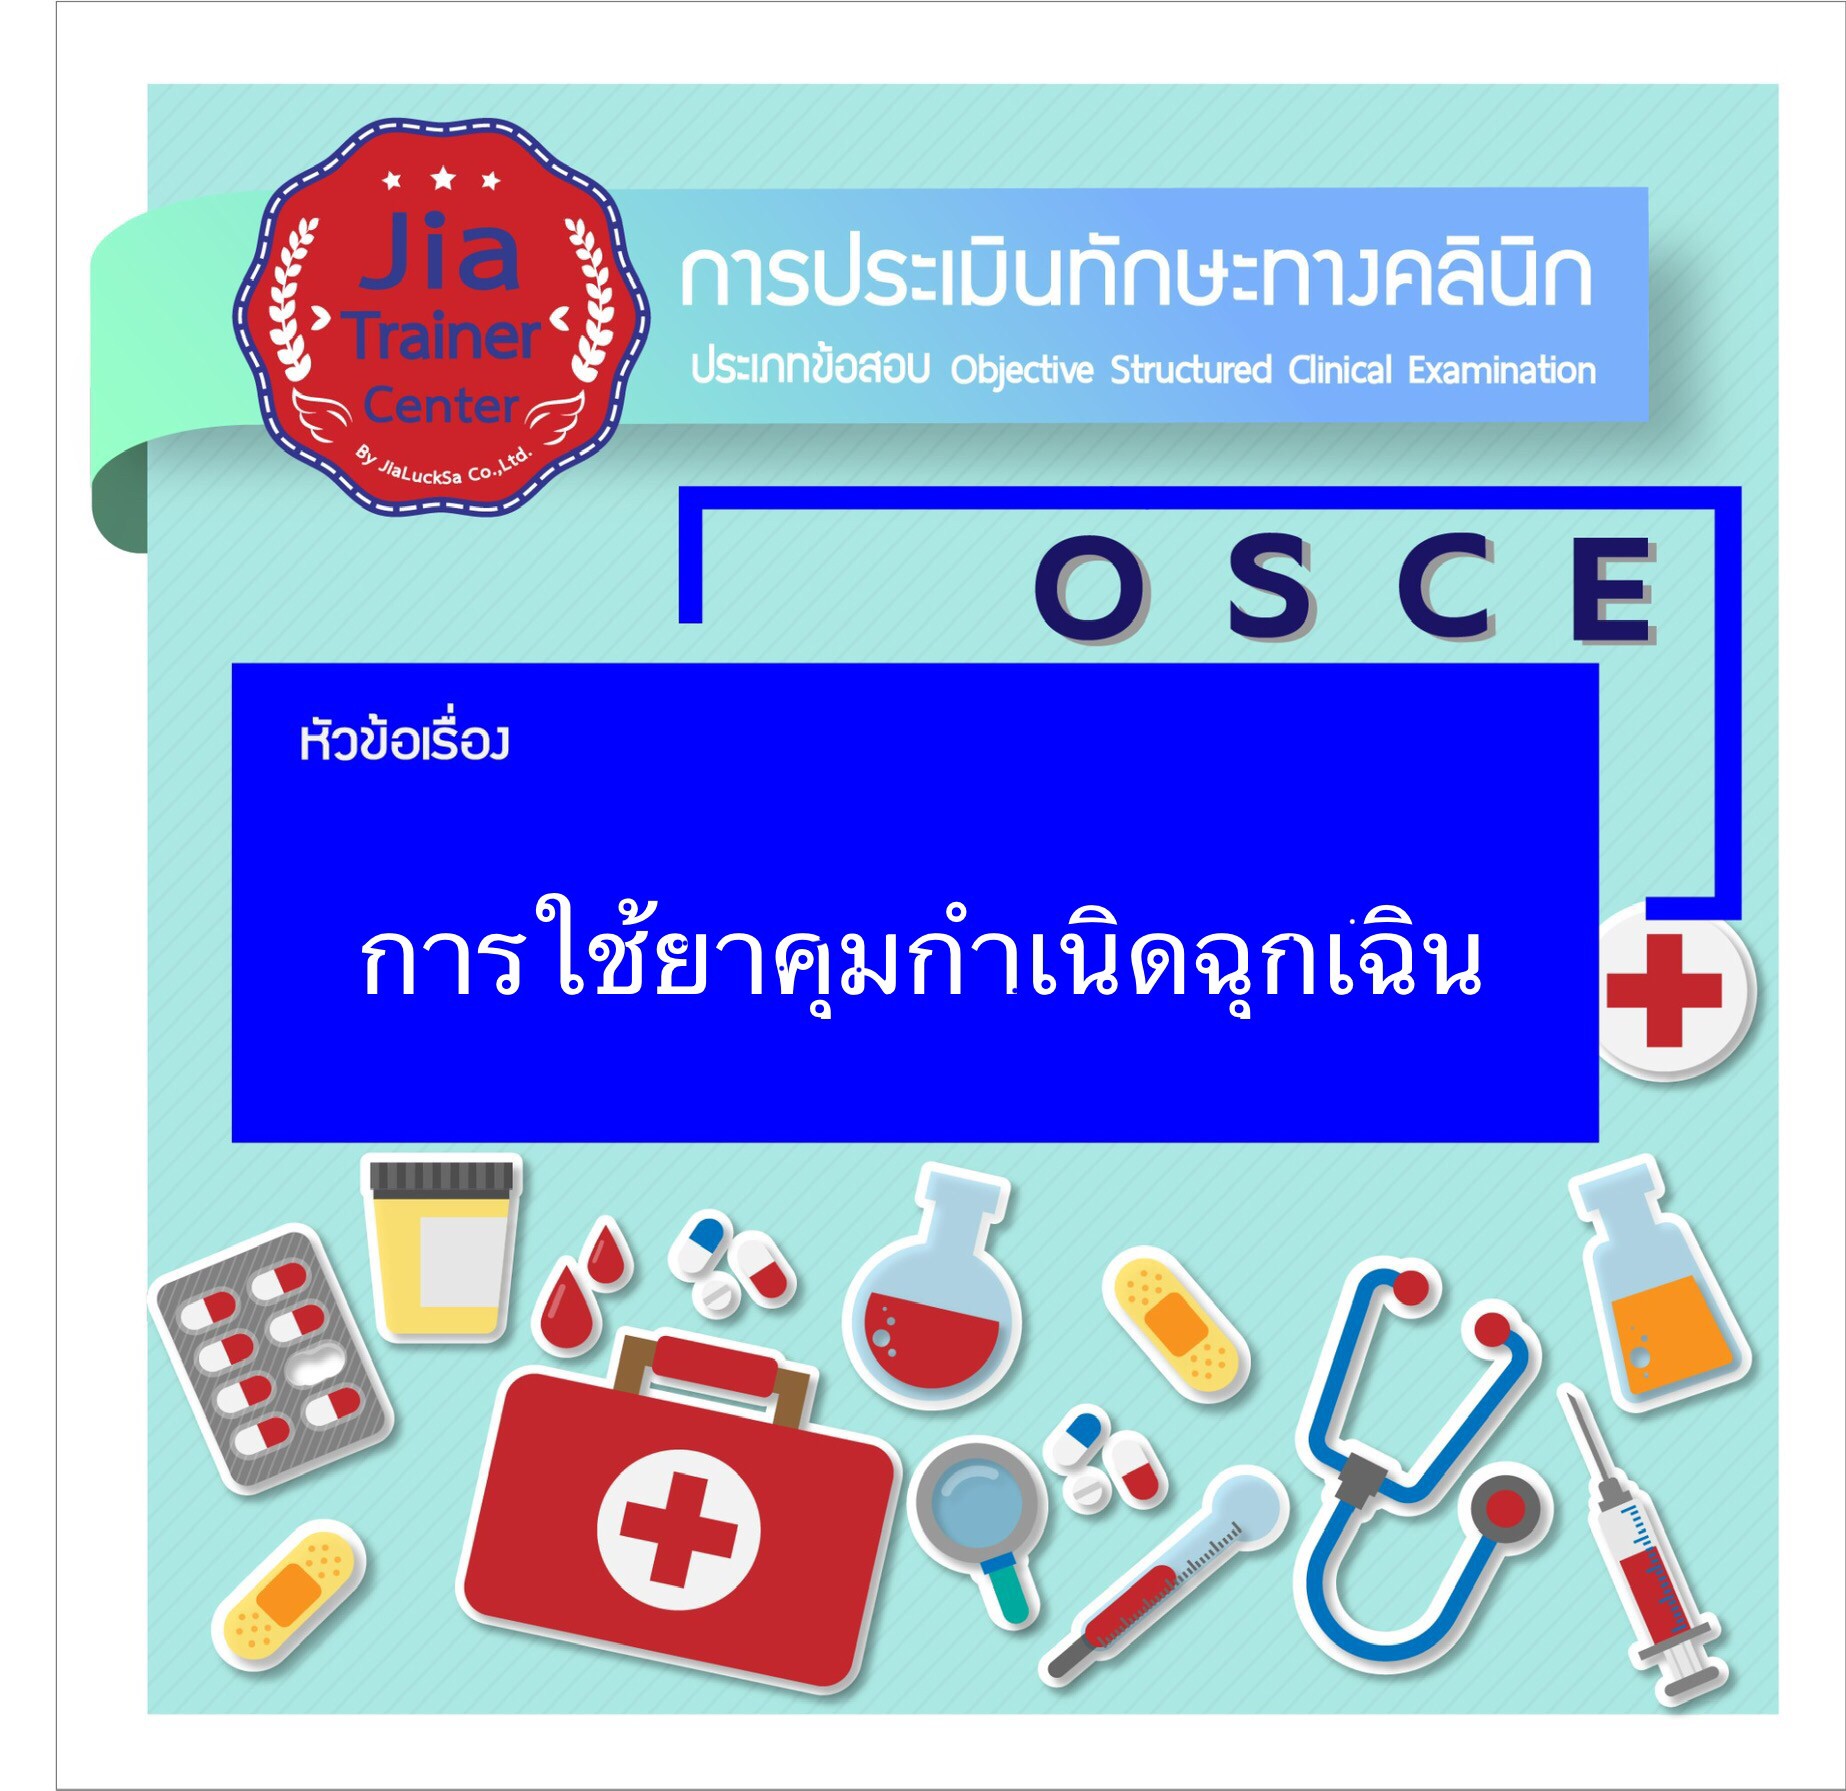 Osce-emergency contraceptive use